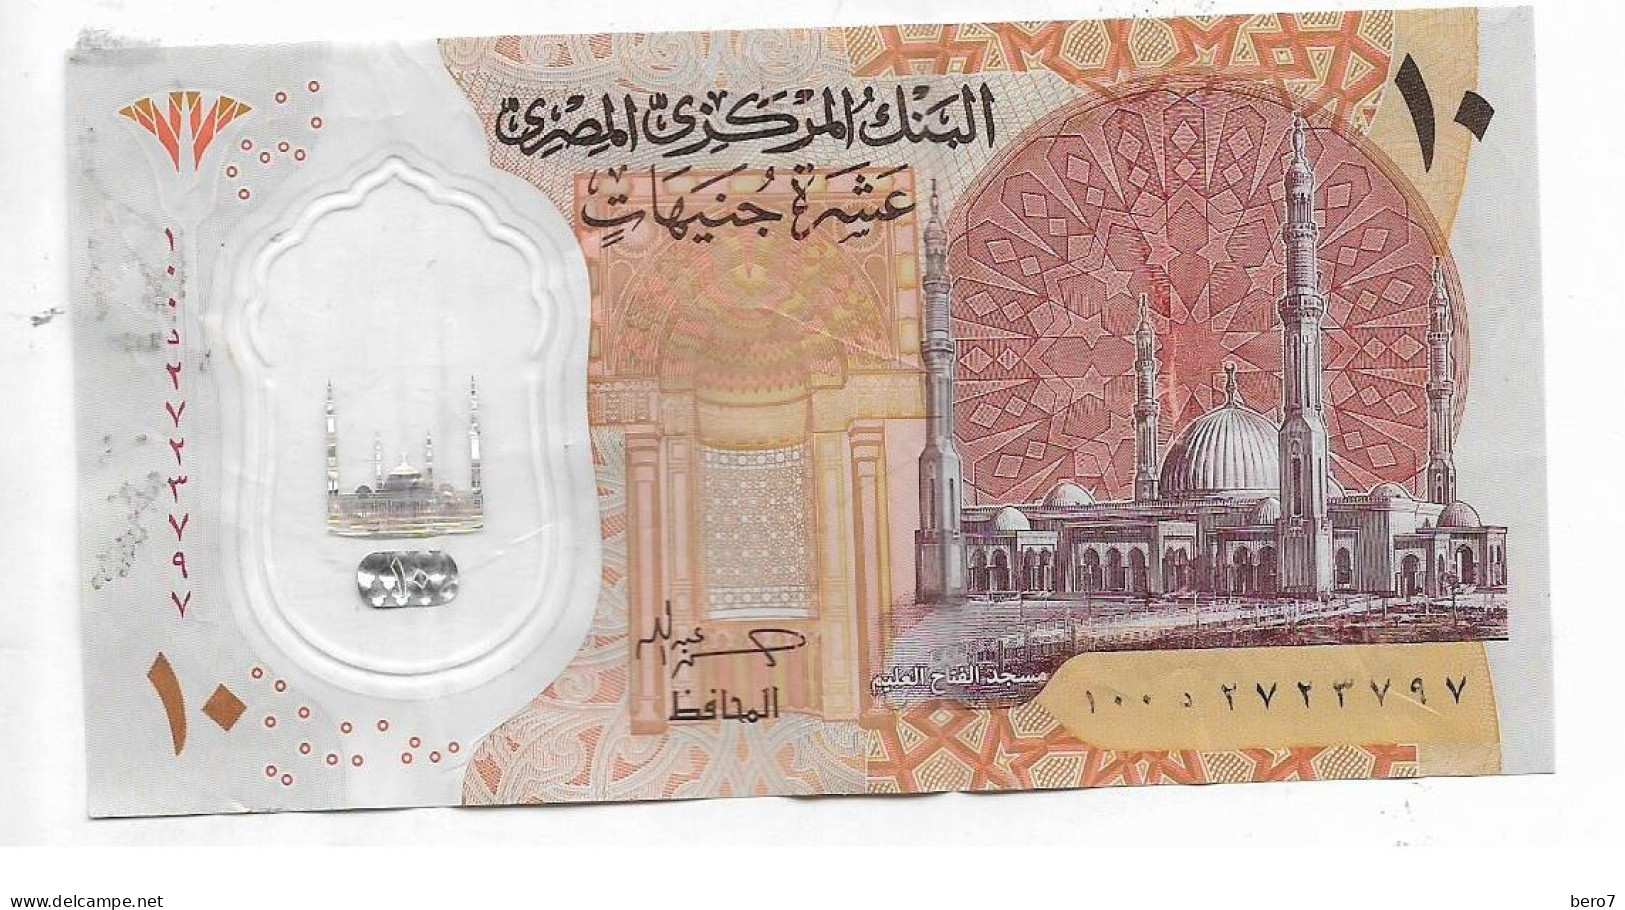 Egypt 10 Pounds Polymer Replacement - Circuated Hassan Abdallah [Circulated]  (Egypte) (Egitto) (Ägypten) (Egipto) - Egipto